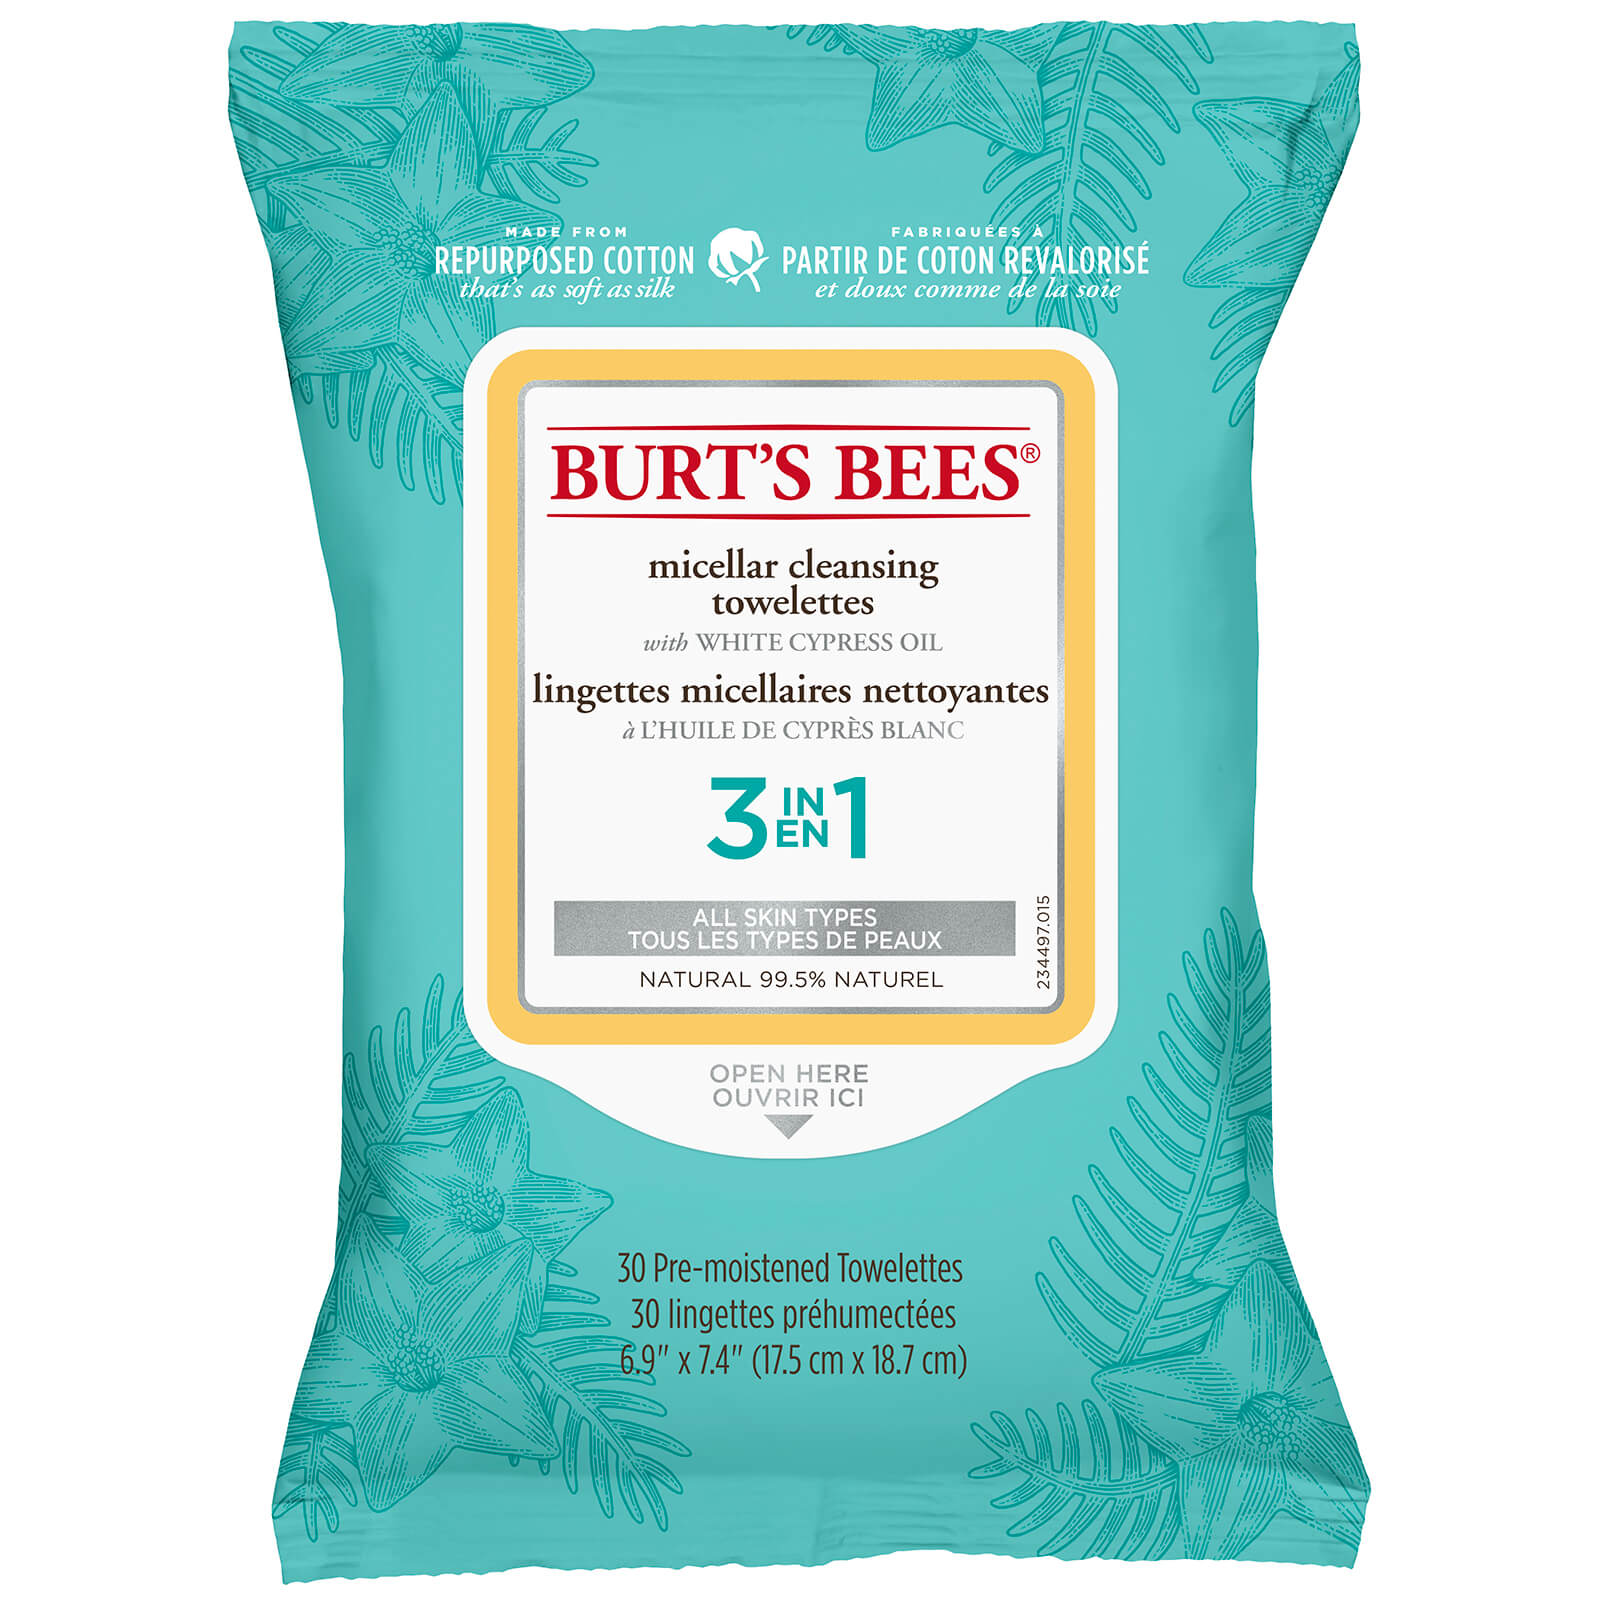 Toallitas micelares limpiadoras de Burt's Bees - 30 unidades